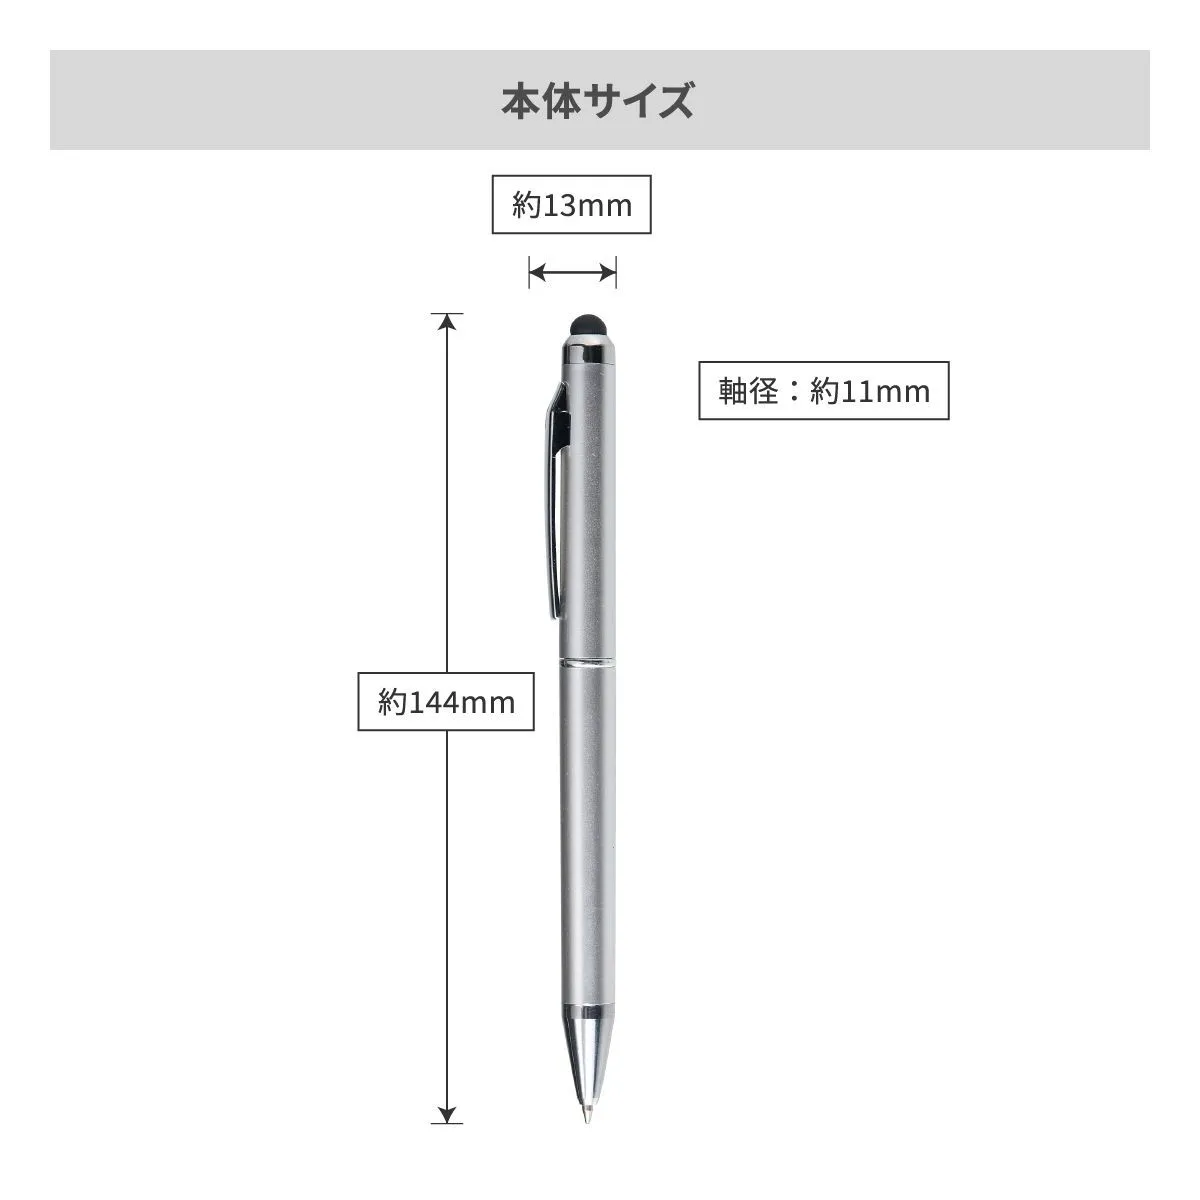 タッチペン付ビジネスペン【多機能ペン / パッド印刷】 画像9